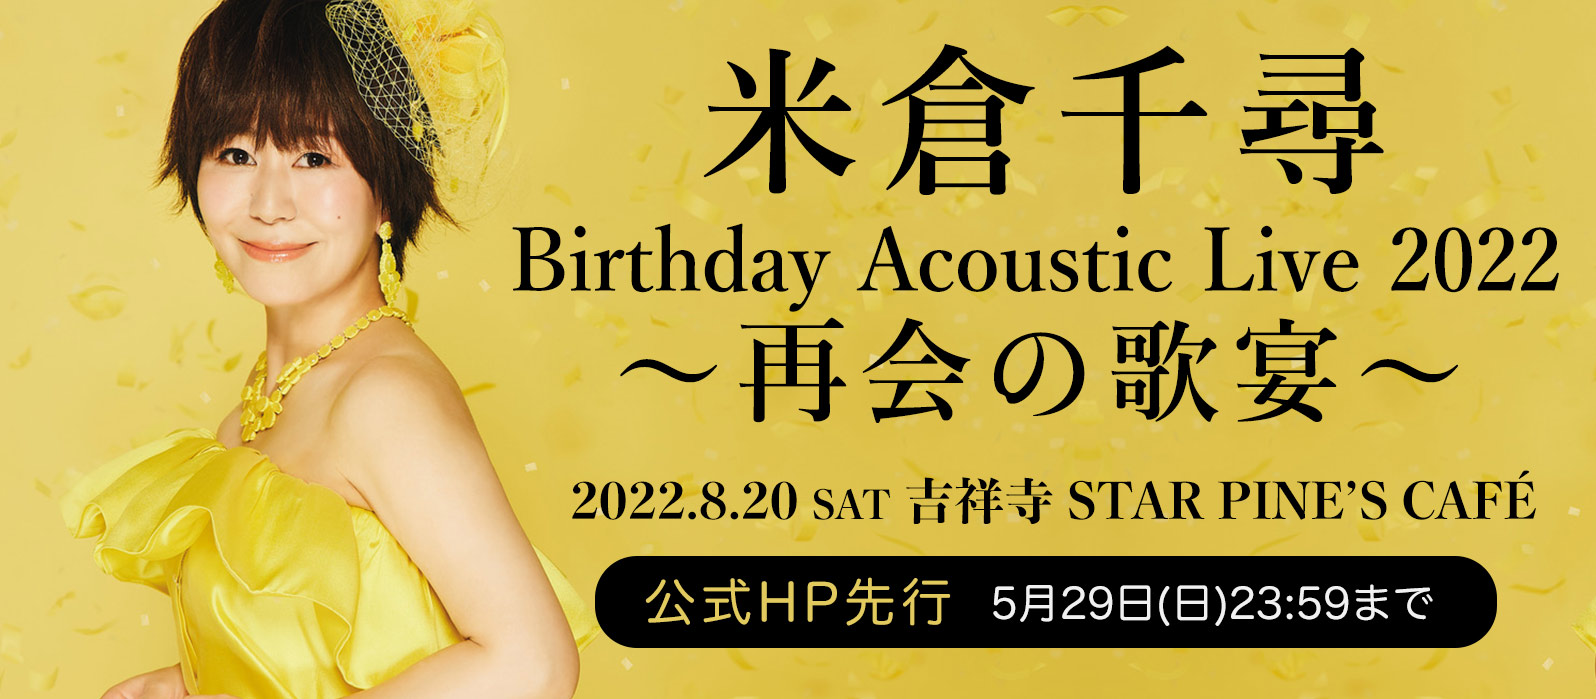 米倉千尋 Birthday Acoustic Live 2022〜再会の歌宴〜